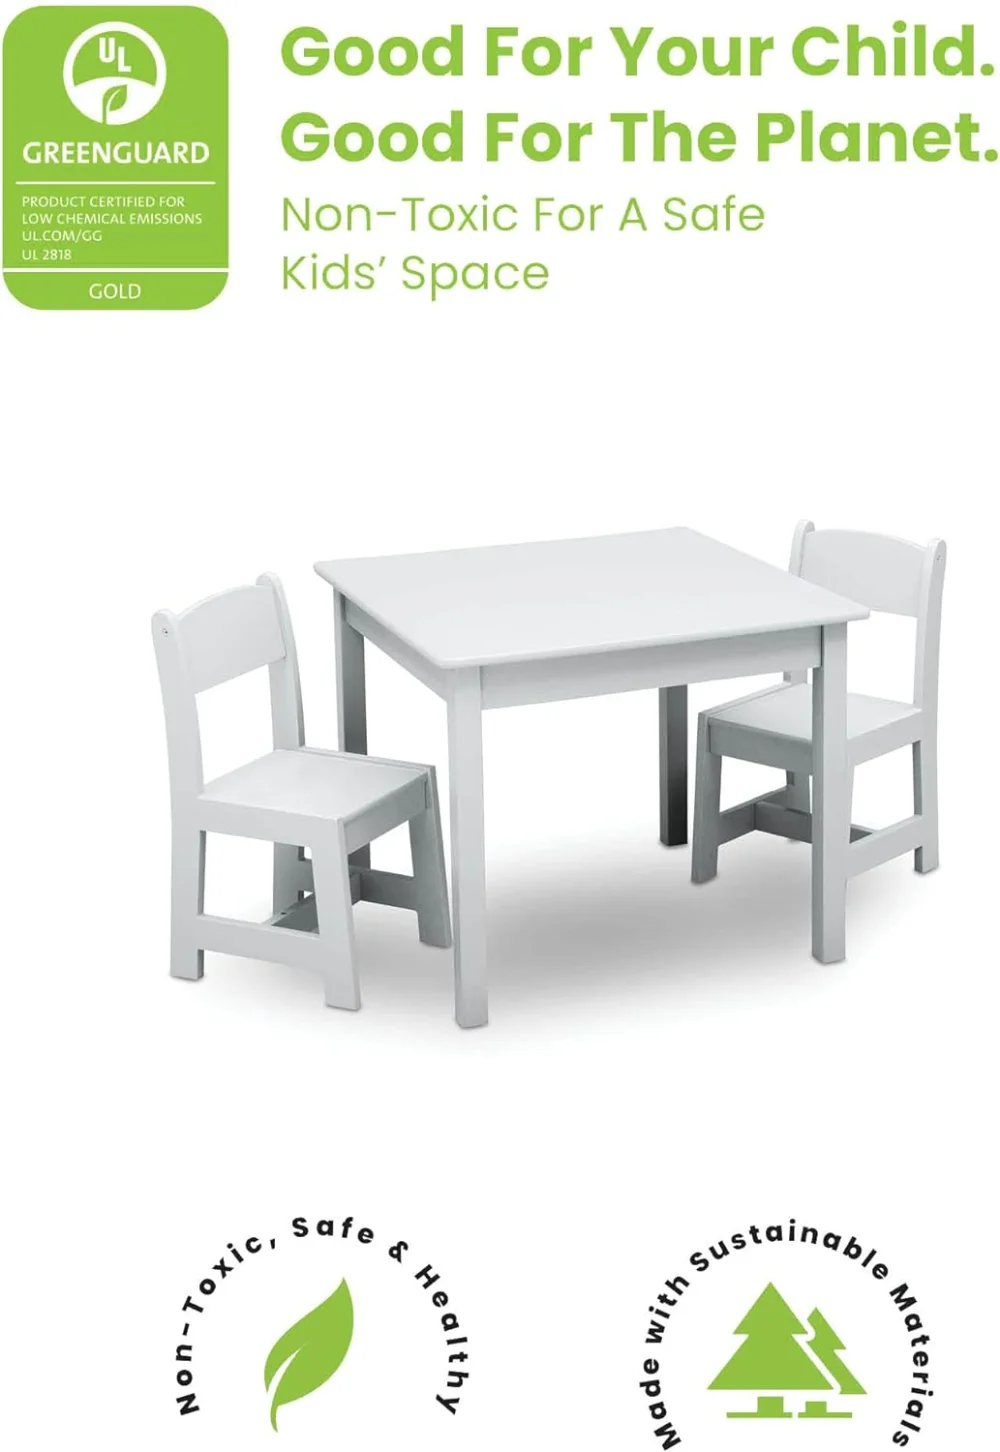 Conjunto de mesa e cadeira de madeira infantil, Greenguard Gold Certified, ideal para artes e ofícios, hora do lanche e mais, 2 cadeiras incluídas